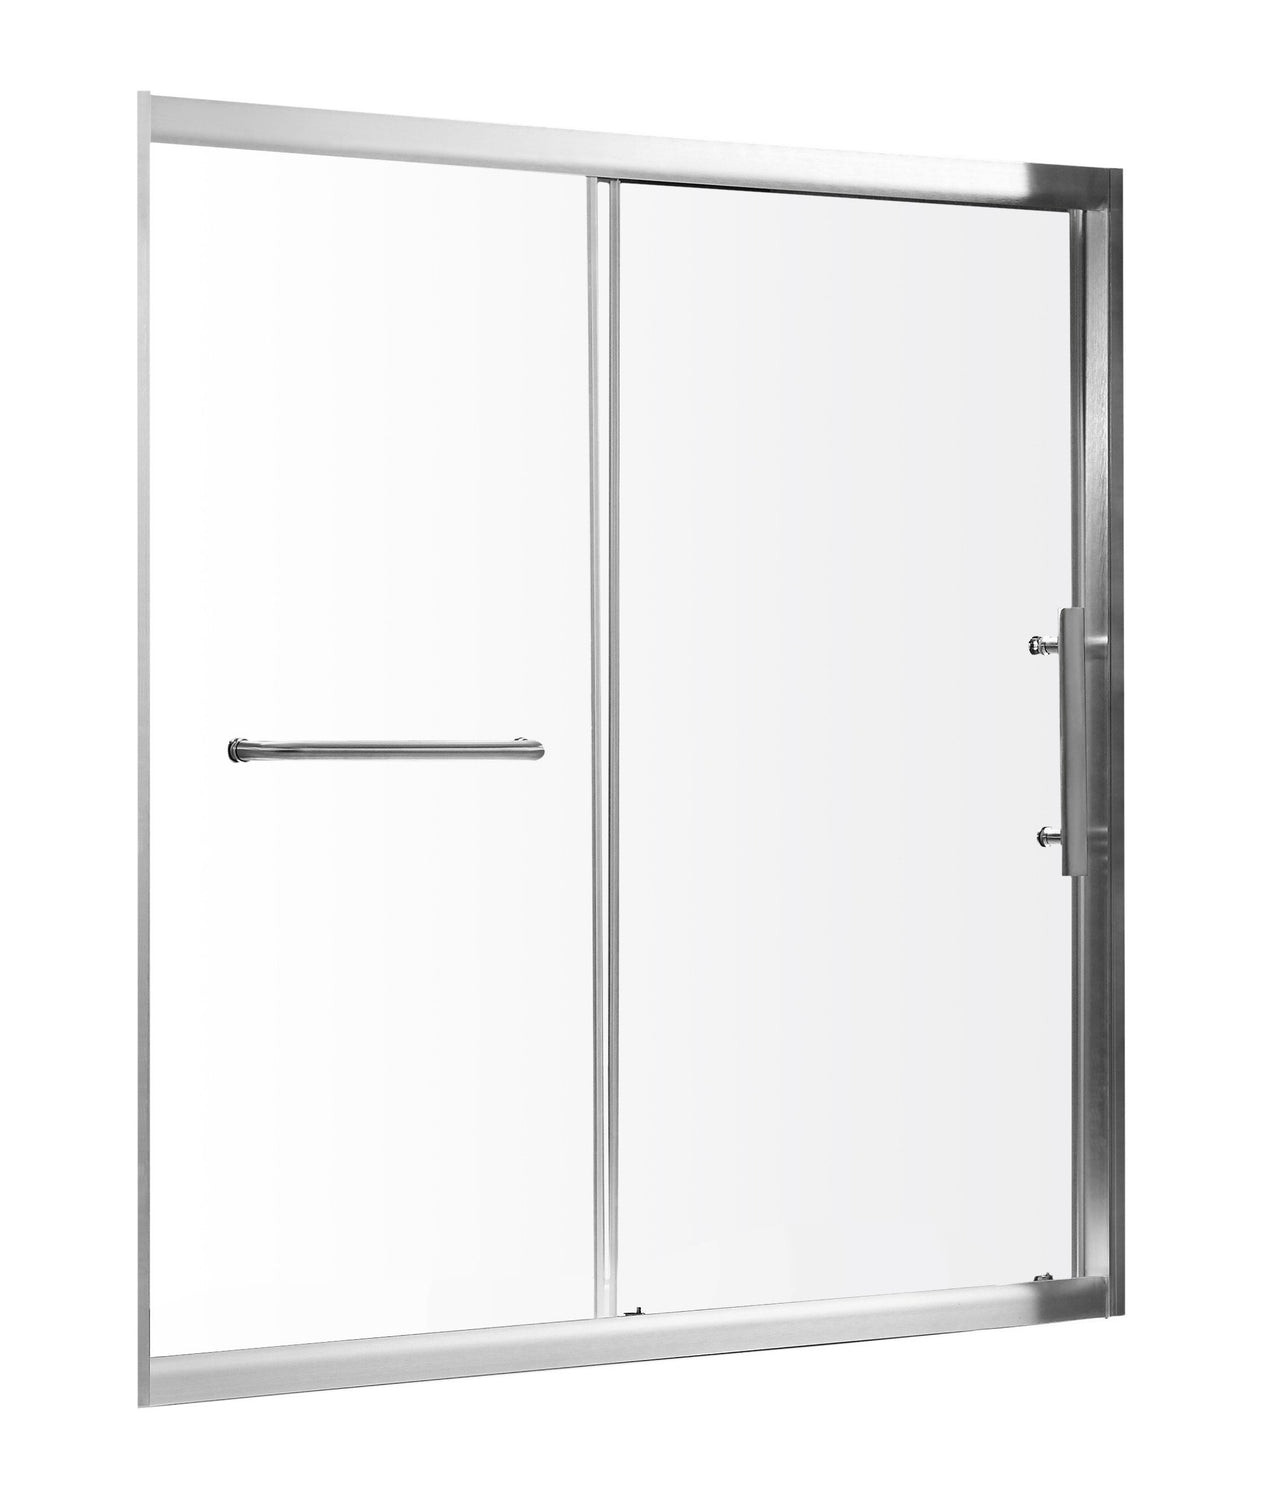 ANZZI Keep Series SD-AZ45BN-R Shower Doors Shower Doors ANZZI 